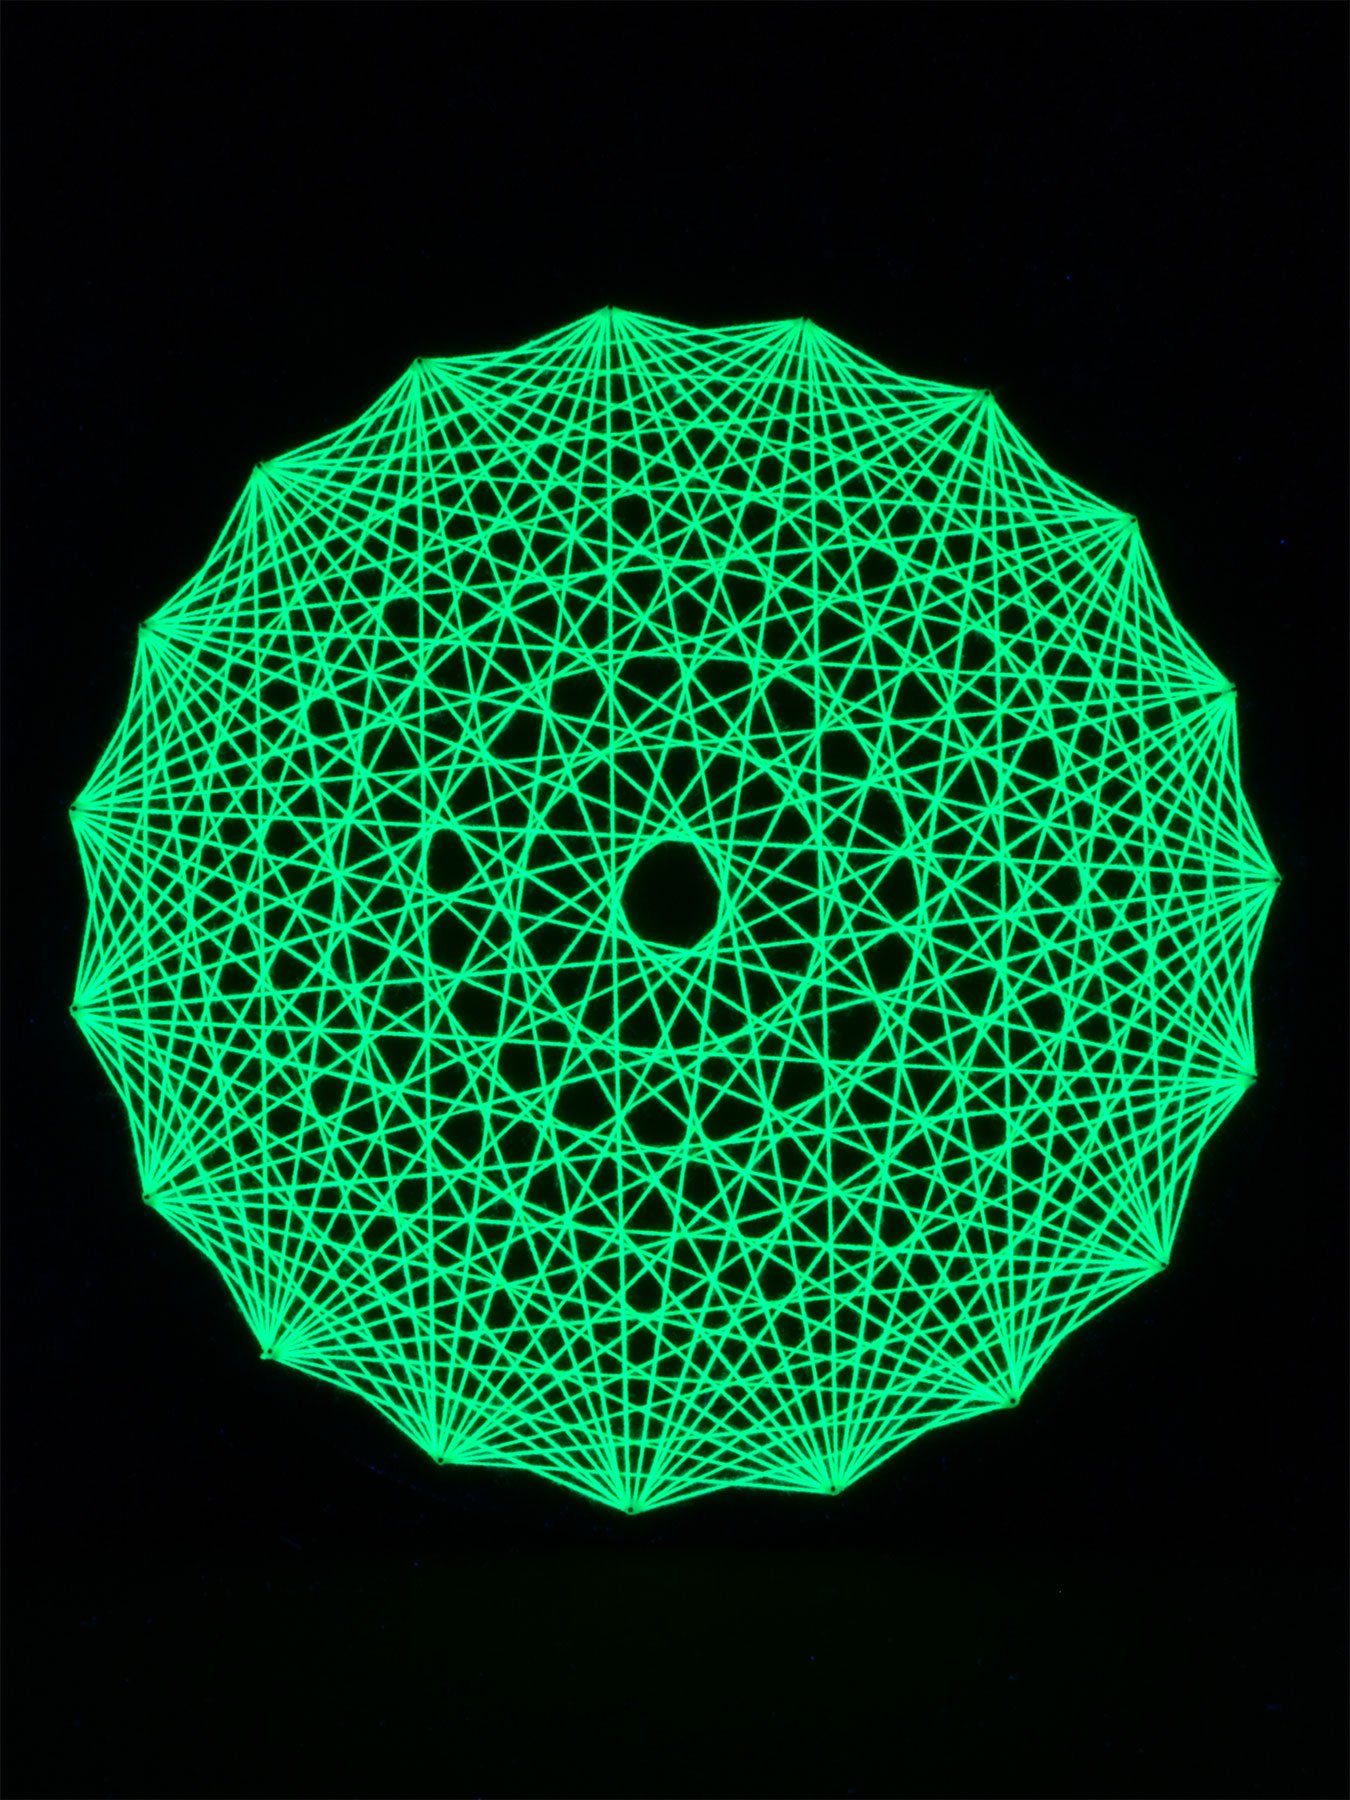 PSYWORK Dekoobjekt Schwarzlicht "Neon Yellow", 50cm, Mandala Schwarzlicht unter 2D Fadendeko UV-aktiv, leuchtet StringArt